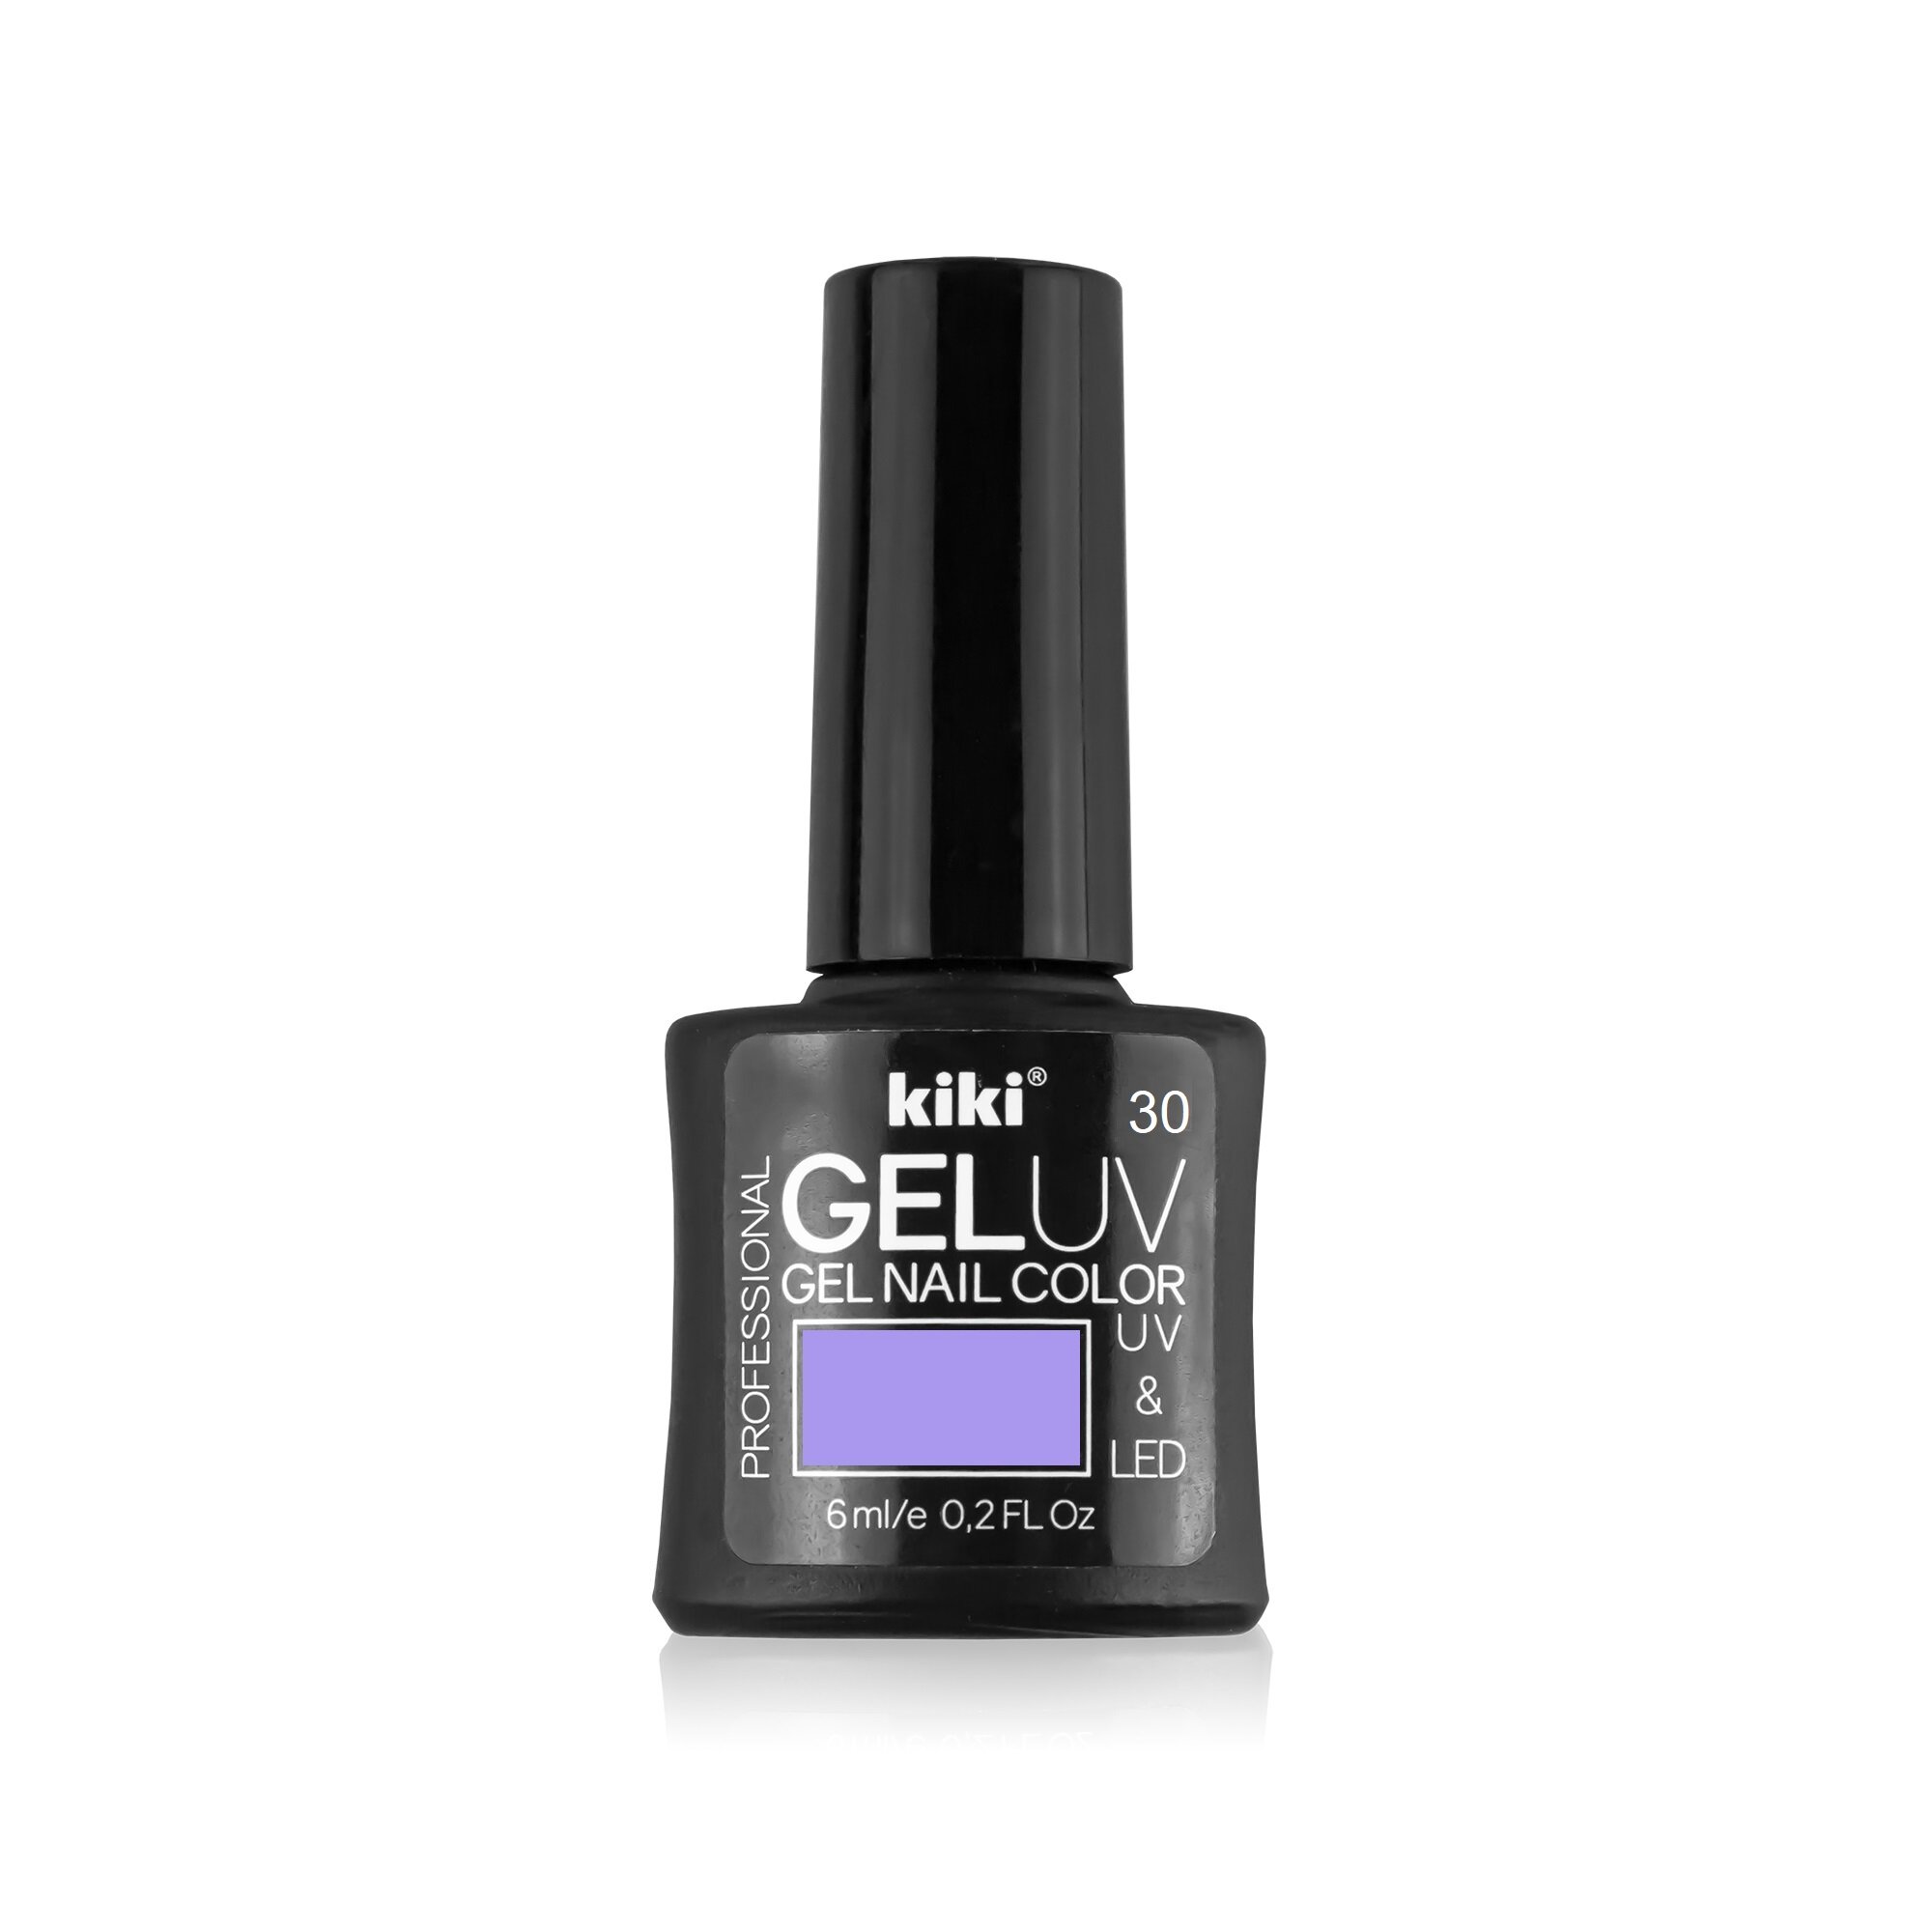 Гель-лак для ногтей KIKI оттенок 30 GEL UV&LED, пастельно-лиловый, 6 мл